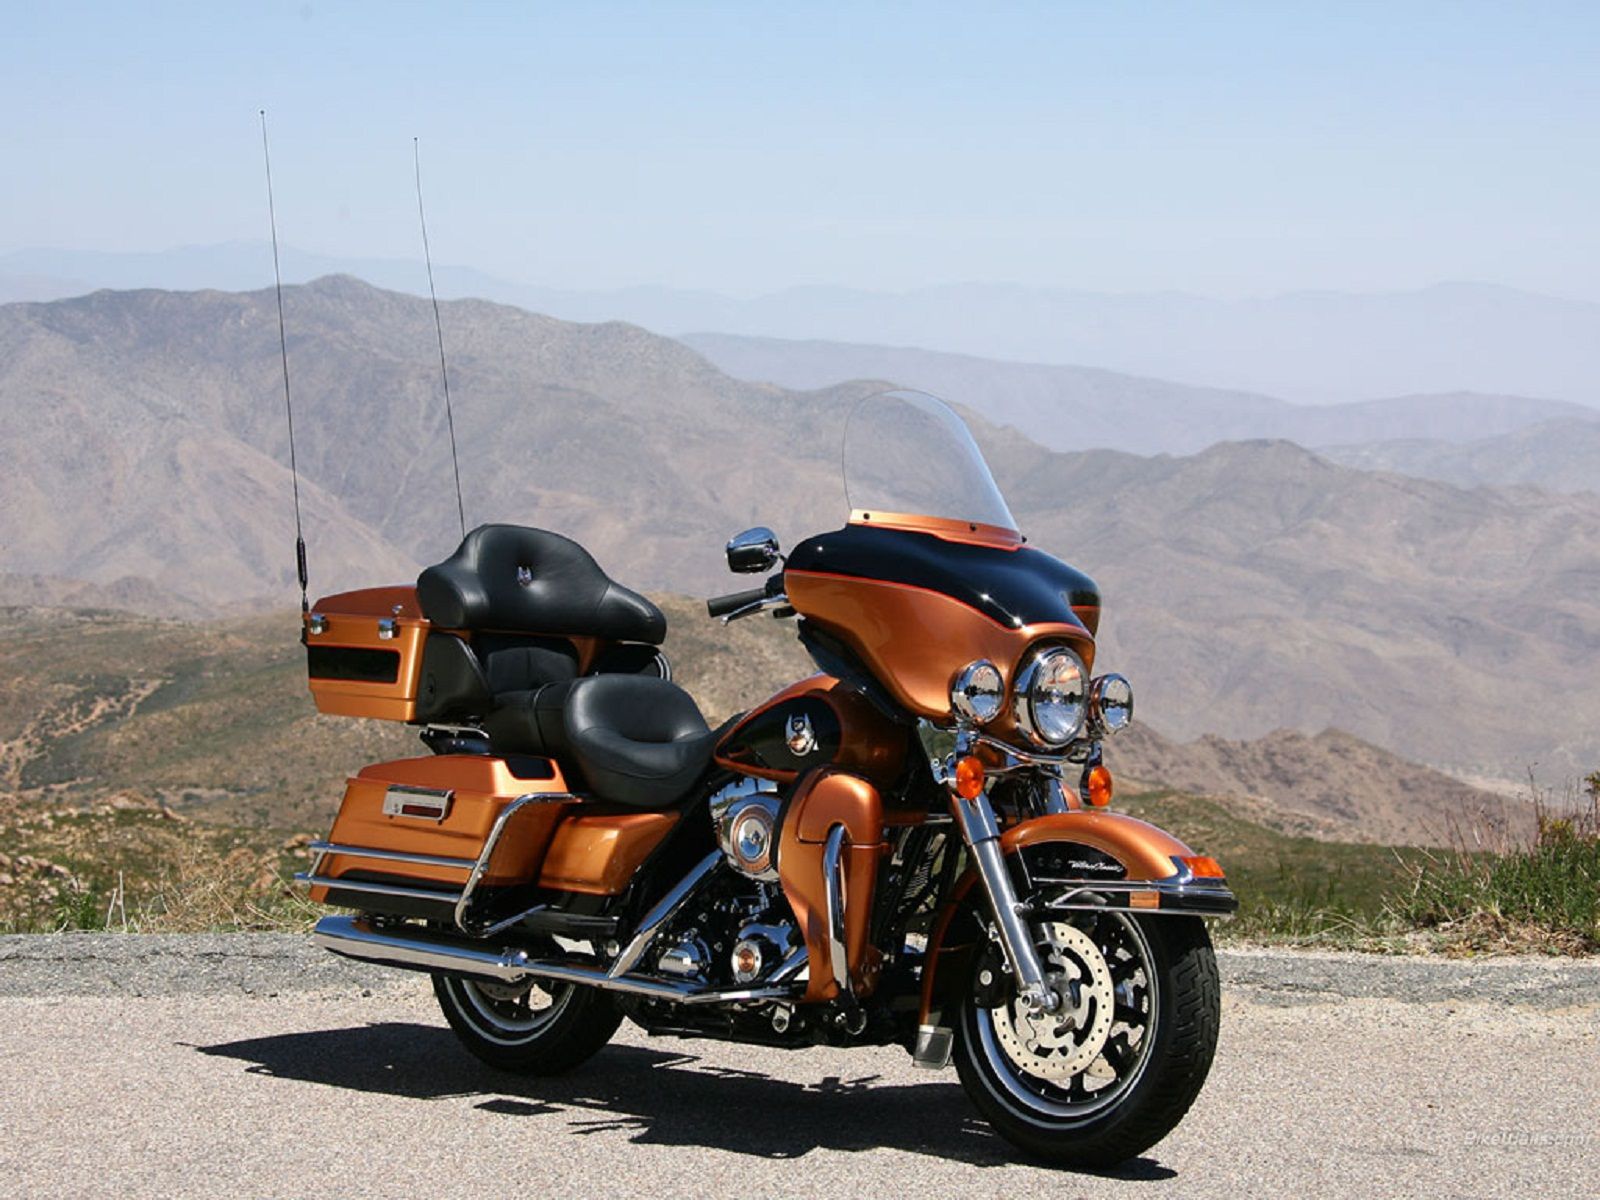 2012 Harley-Davidson FLHTCU Ultra Classic Electra Glide